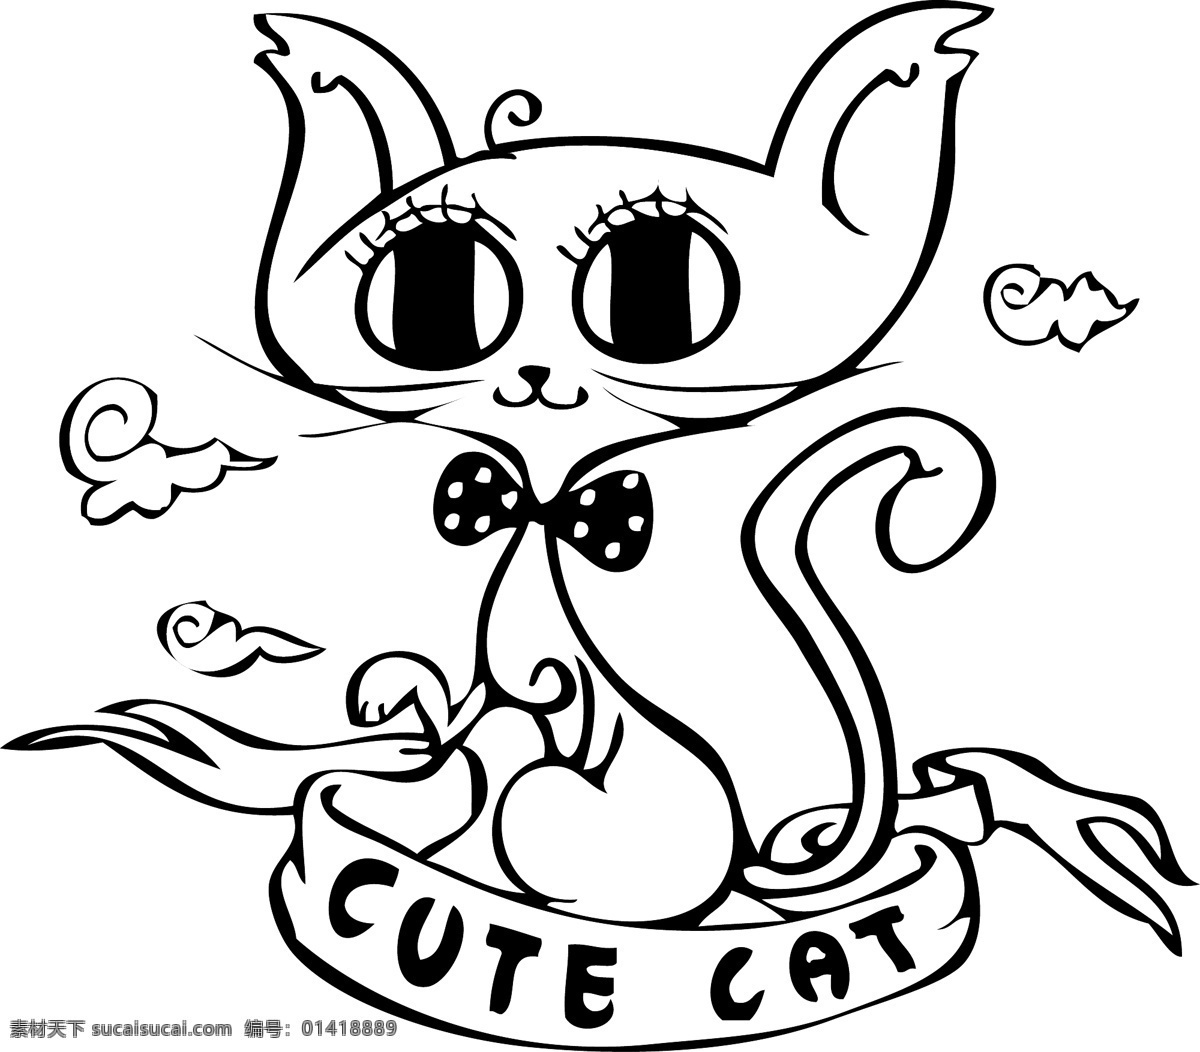 印花 矢量图 服装图案 卡通动物 可爱卡通 猫 印花矢量图 云彩 面料图库 服装设计 图案花型